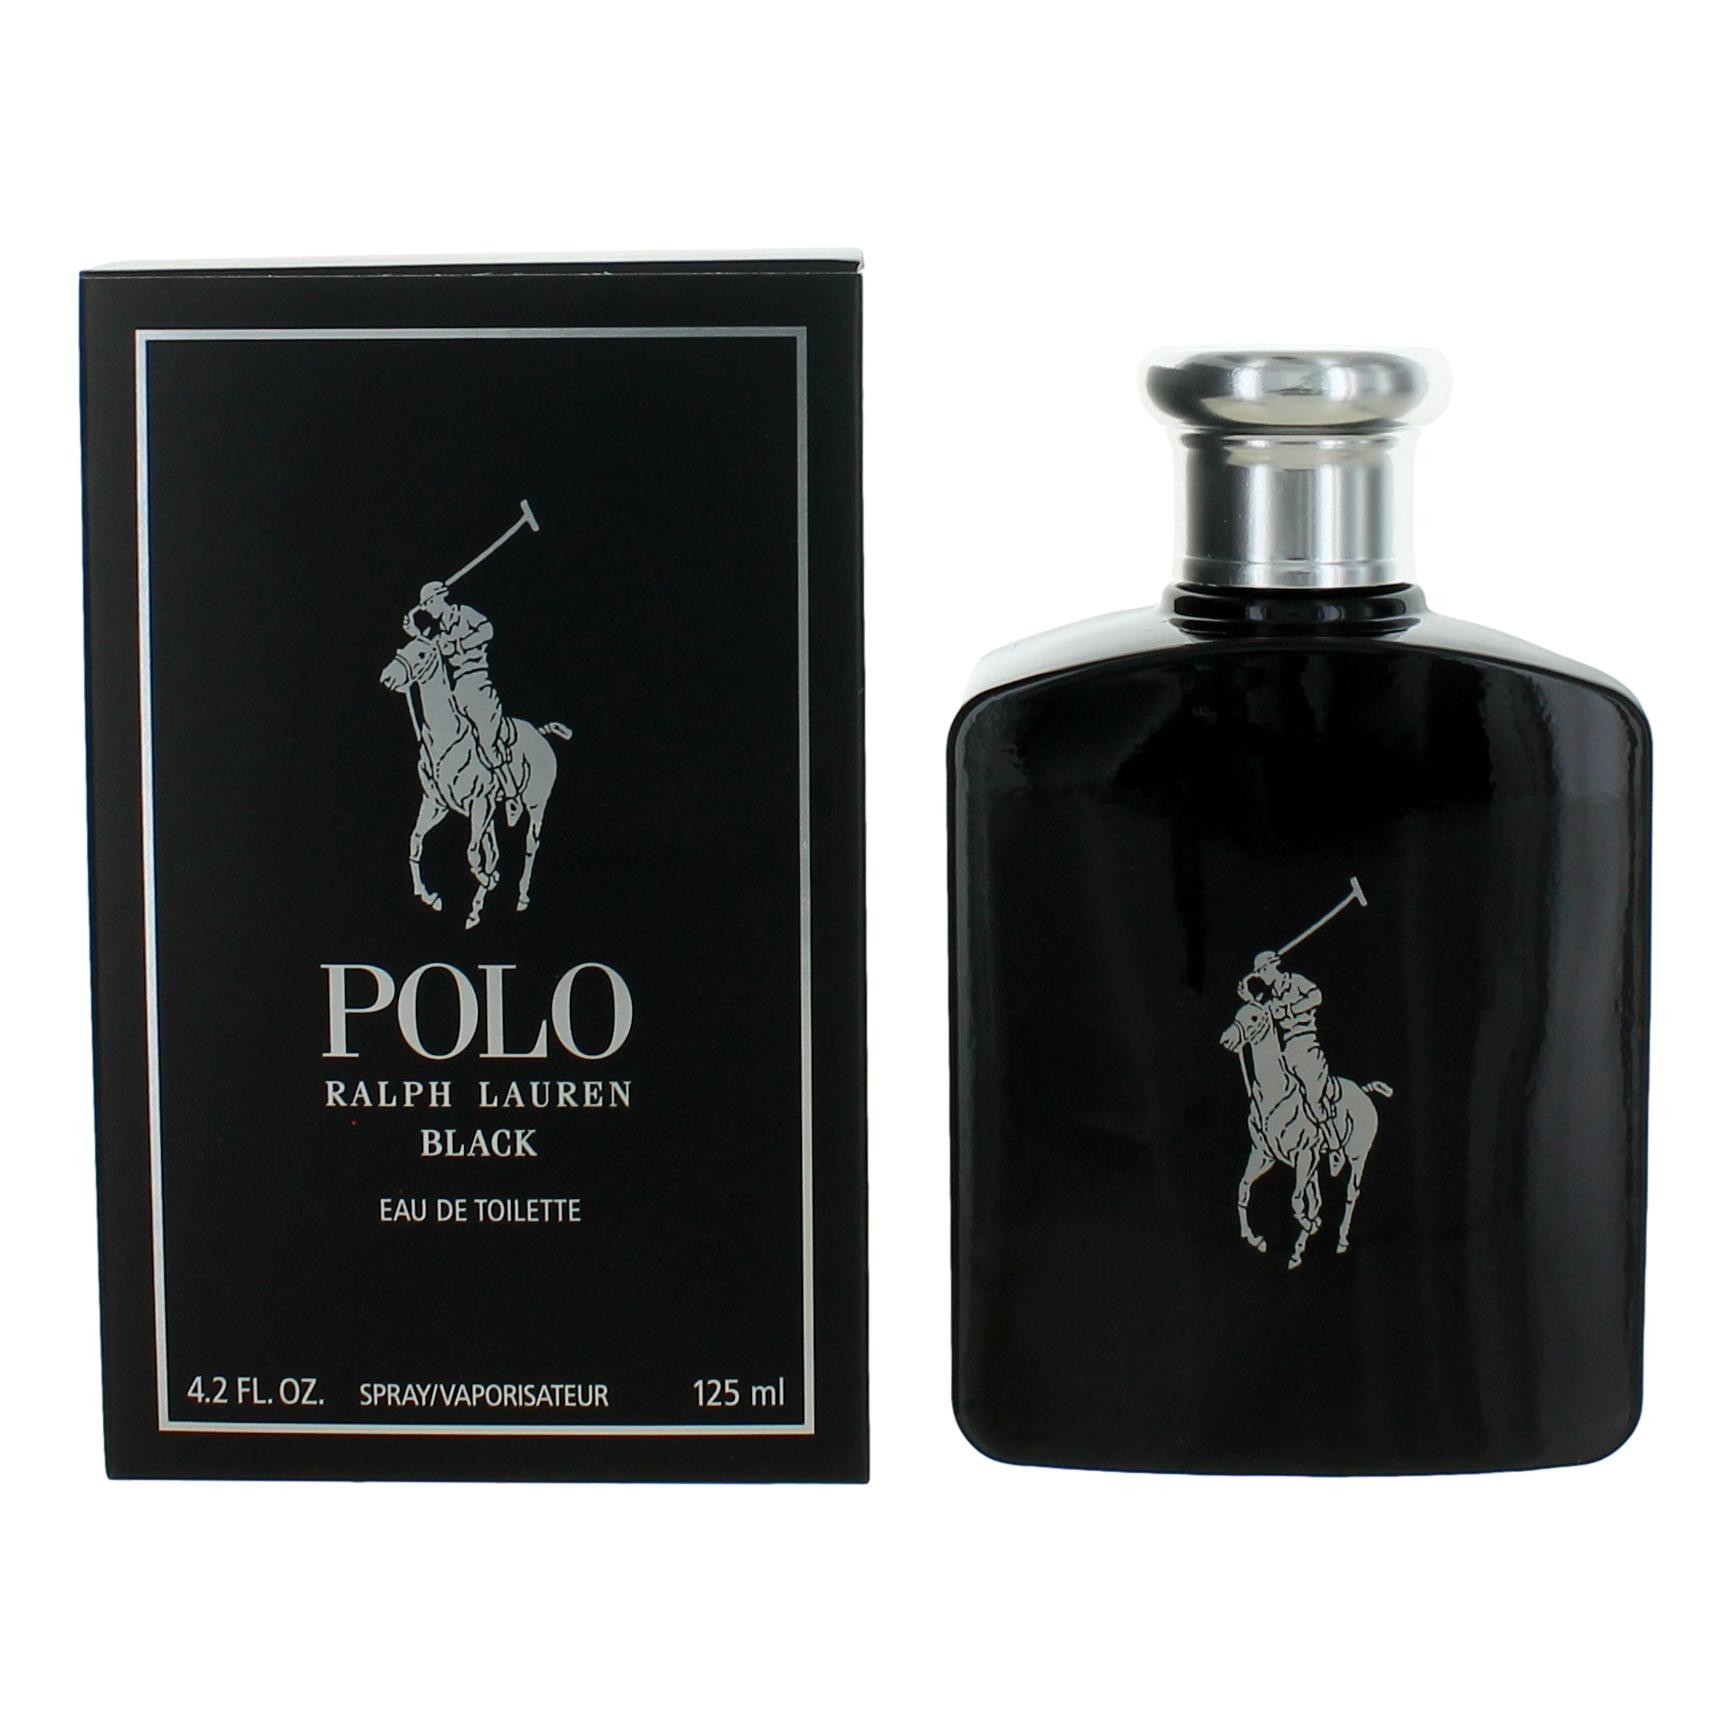 Polo Black by Ralph Lauren 4.2 oz Eau De Toilette Spray for Men